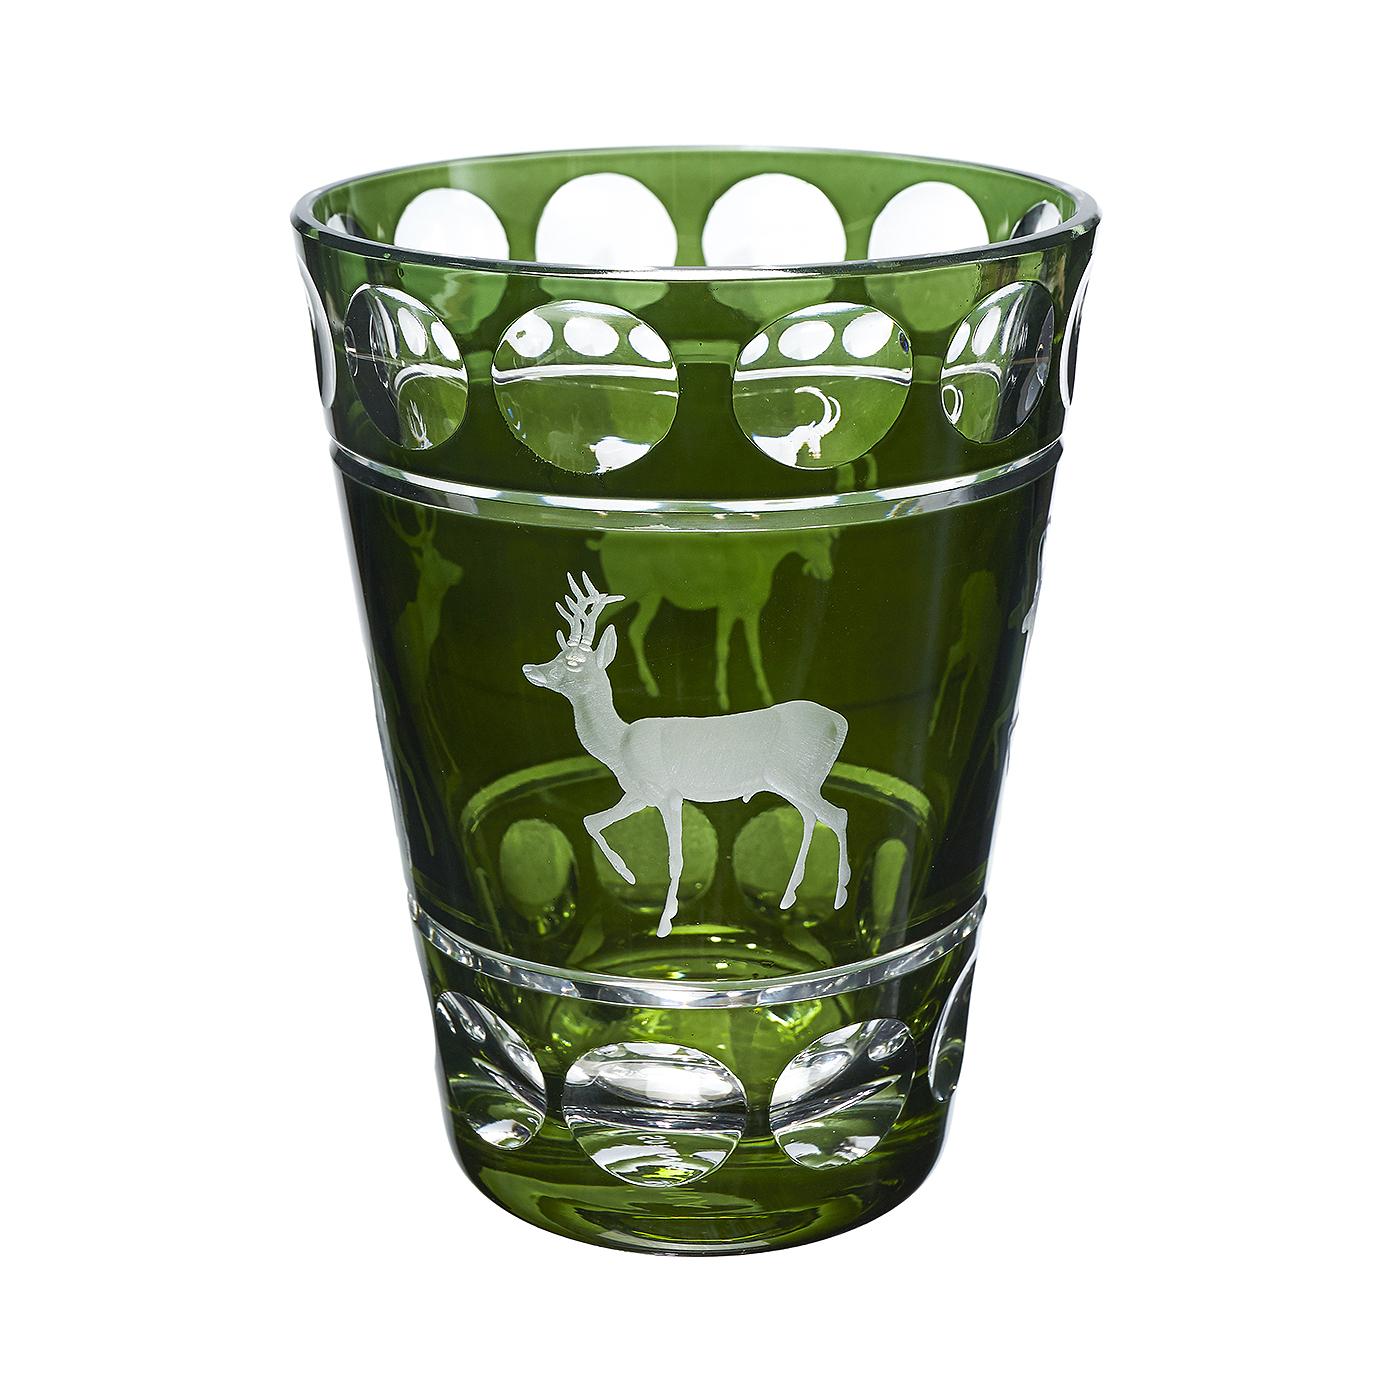 Vase aus mundgeblasenem grünem Kristallglas mit handgeschliffener Jagdszene. Das Dekor ist ein Jagddekor mit vier handgravierten Tieren im naturalistischen Stil. Komplett mundgeblasen und handgraviert in Bayern Deutschland. Das hier abgebildete Glas